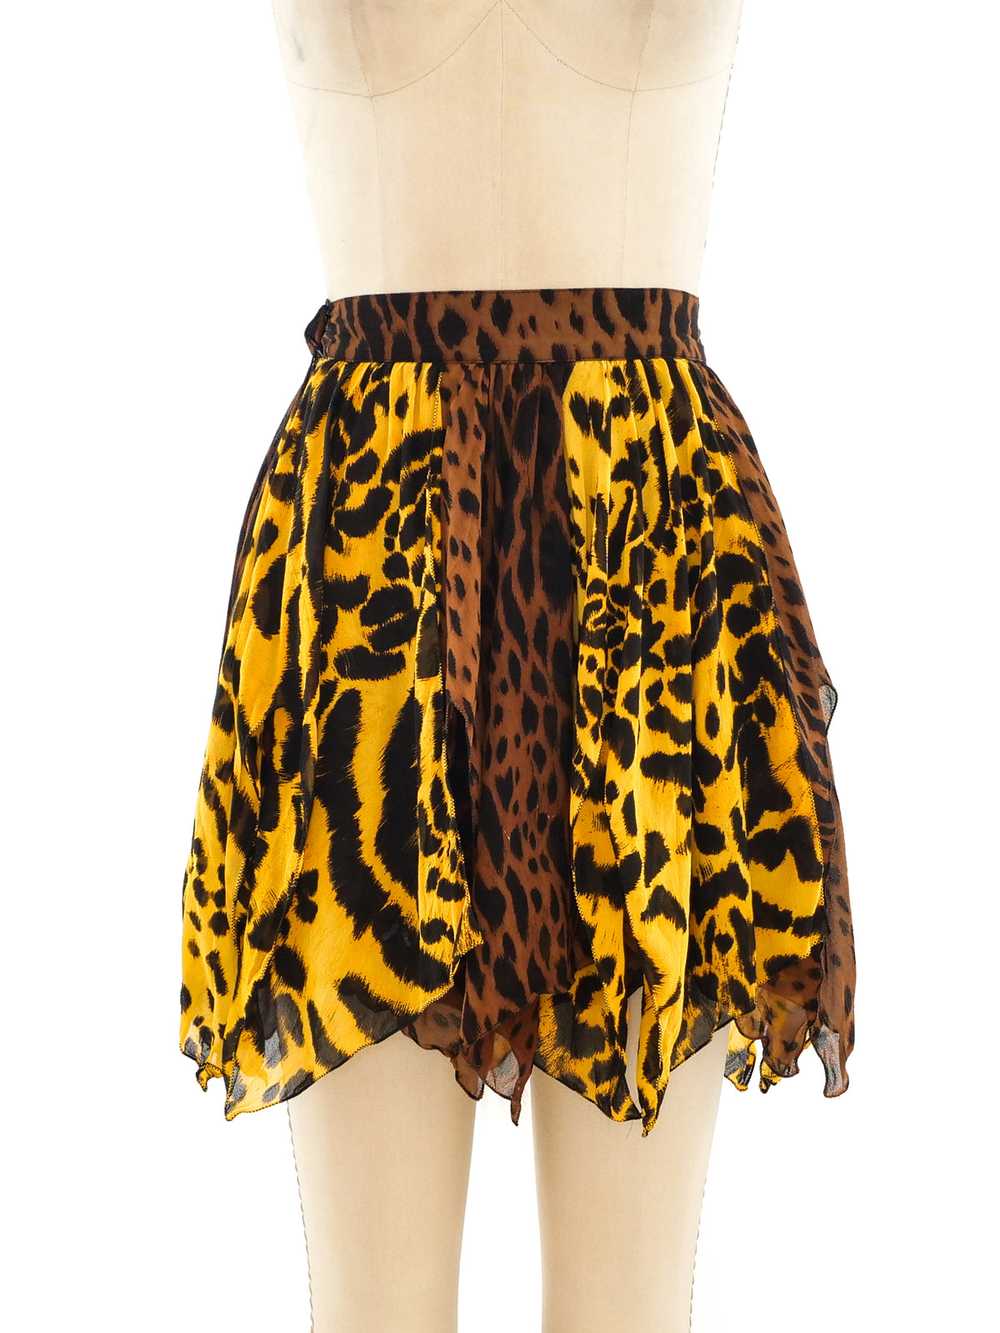 Gianni Versace Animal Printed Silk Skirt - image 1